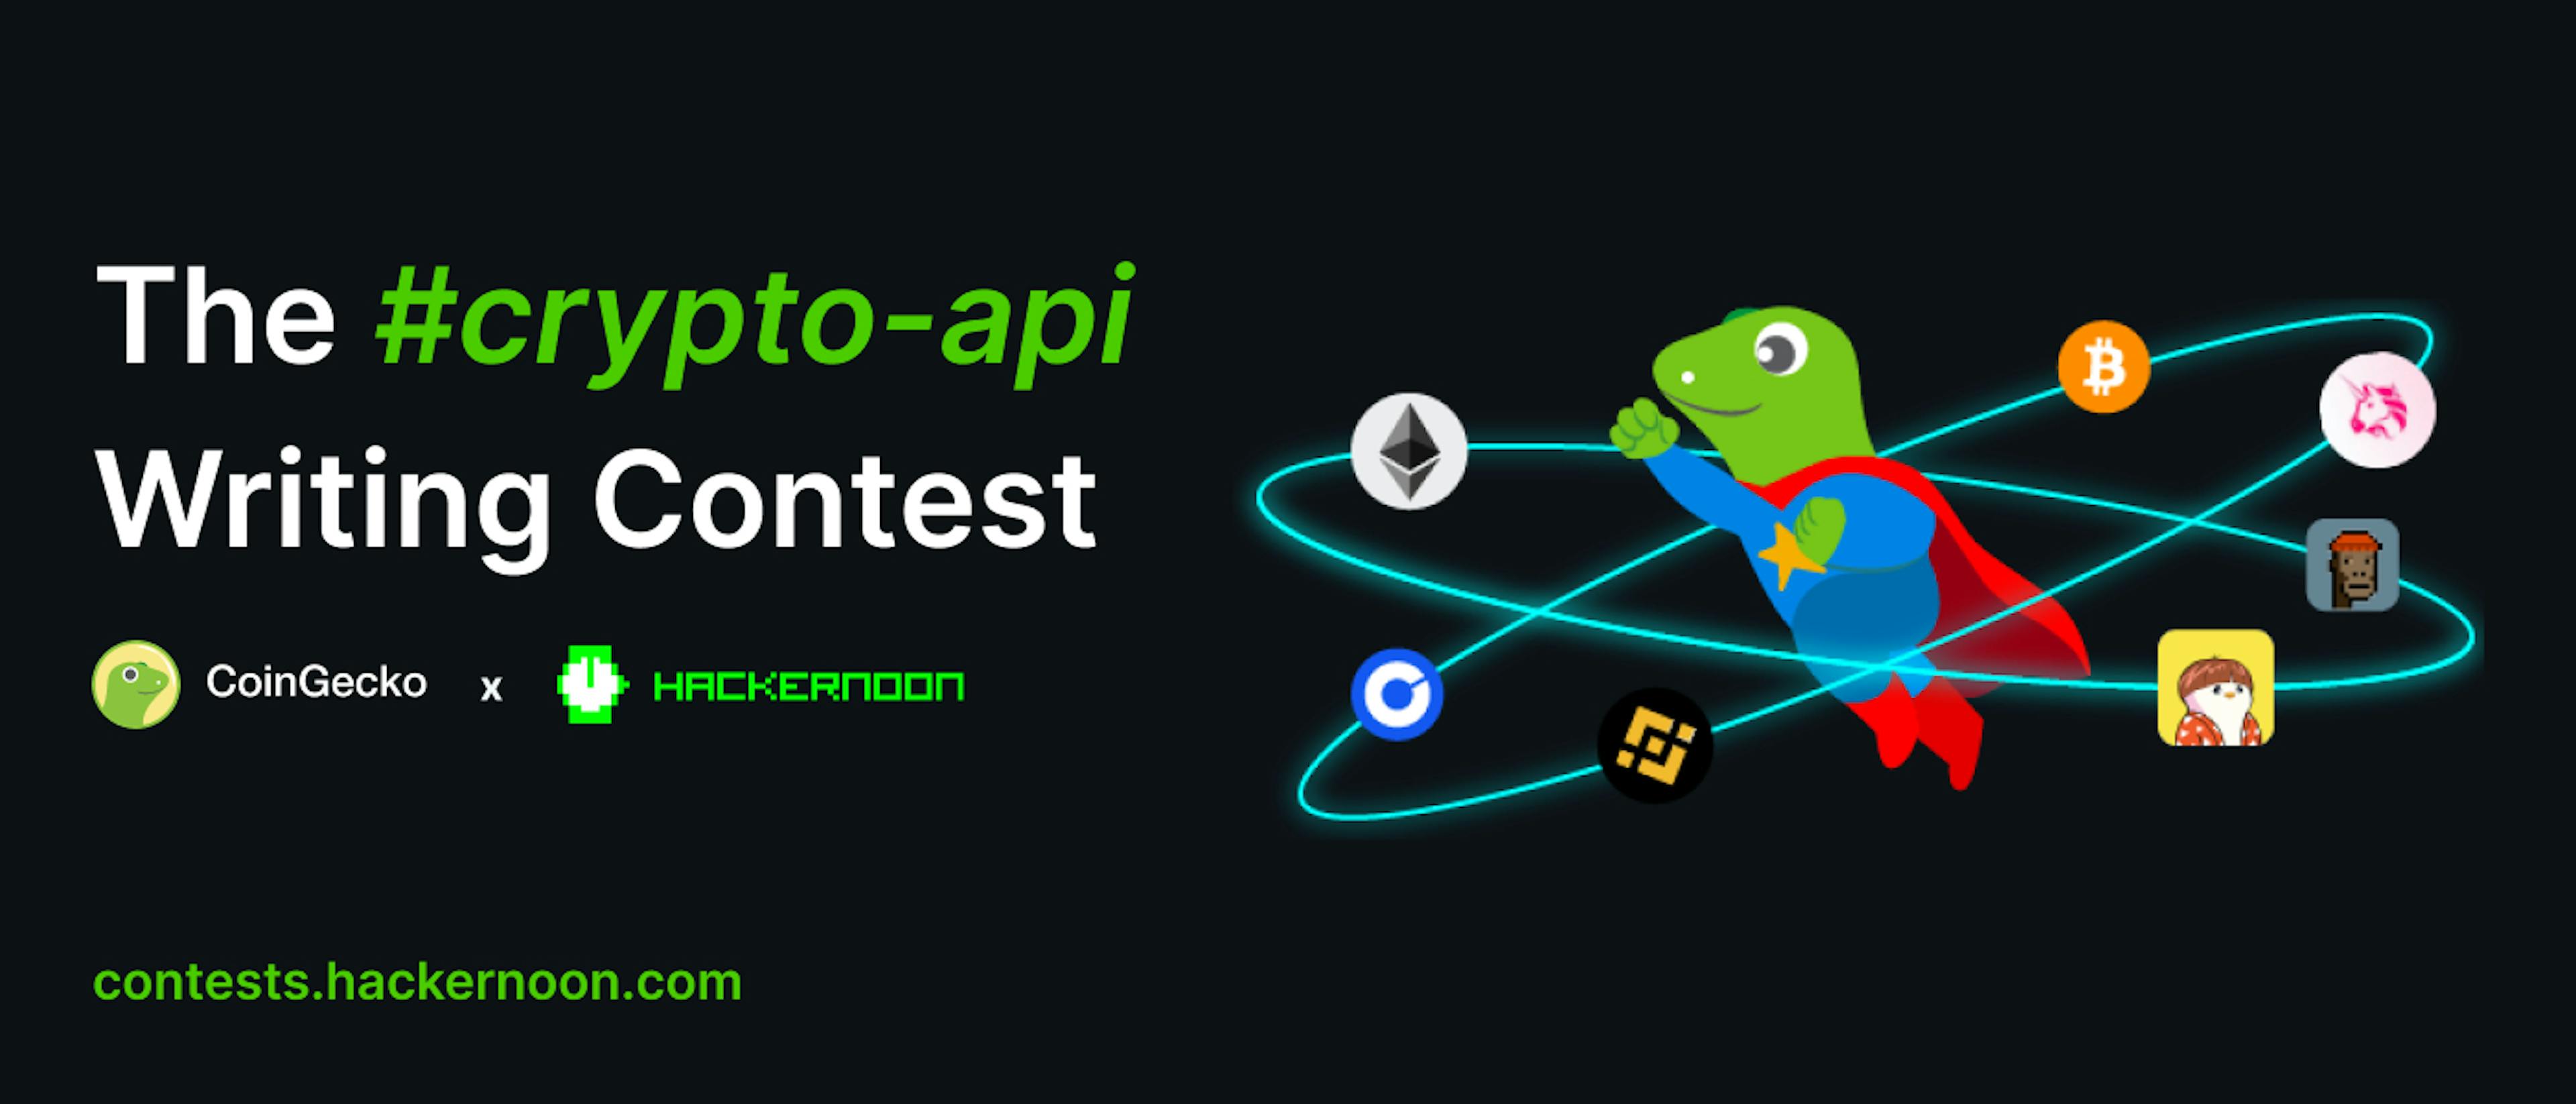 featured image - CoinGecko ve HackerNoon'un #crypto-api Yazma Yarışması